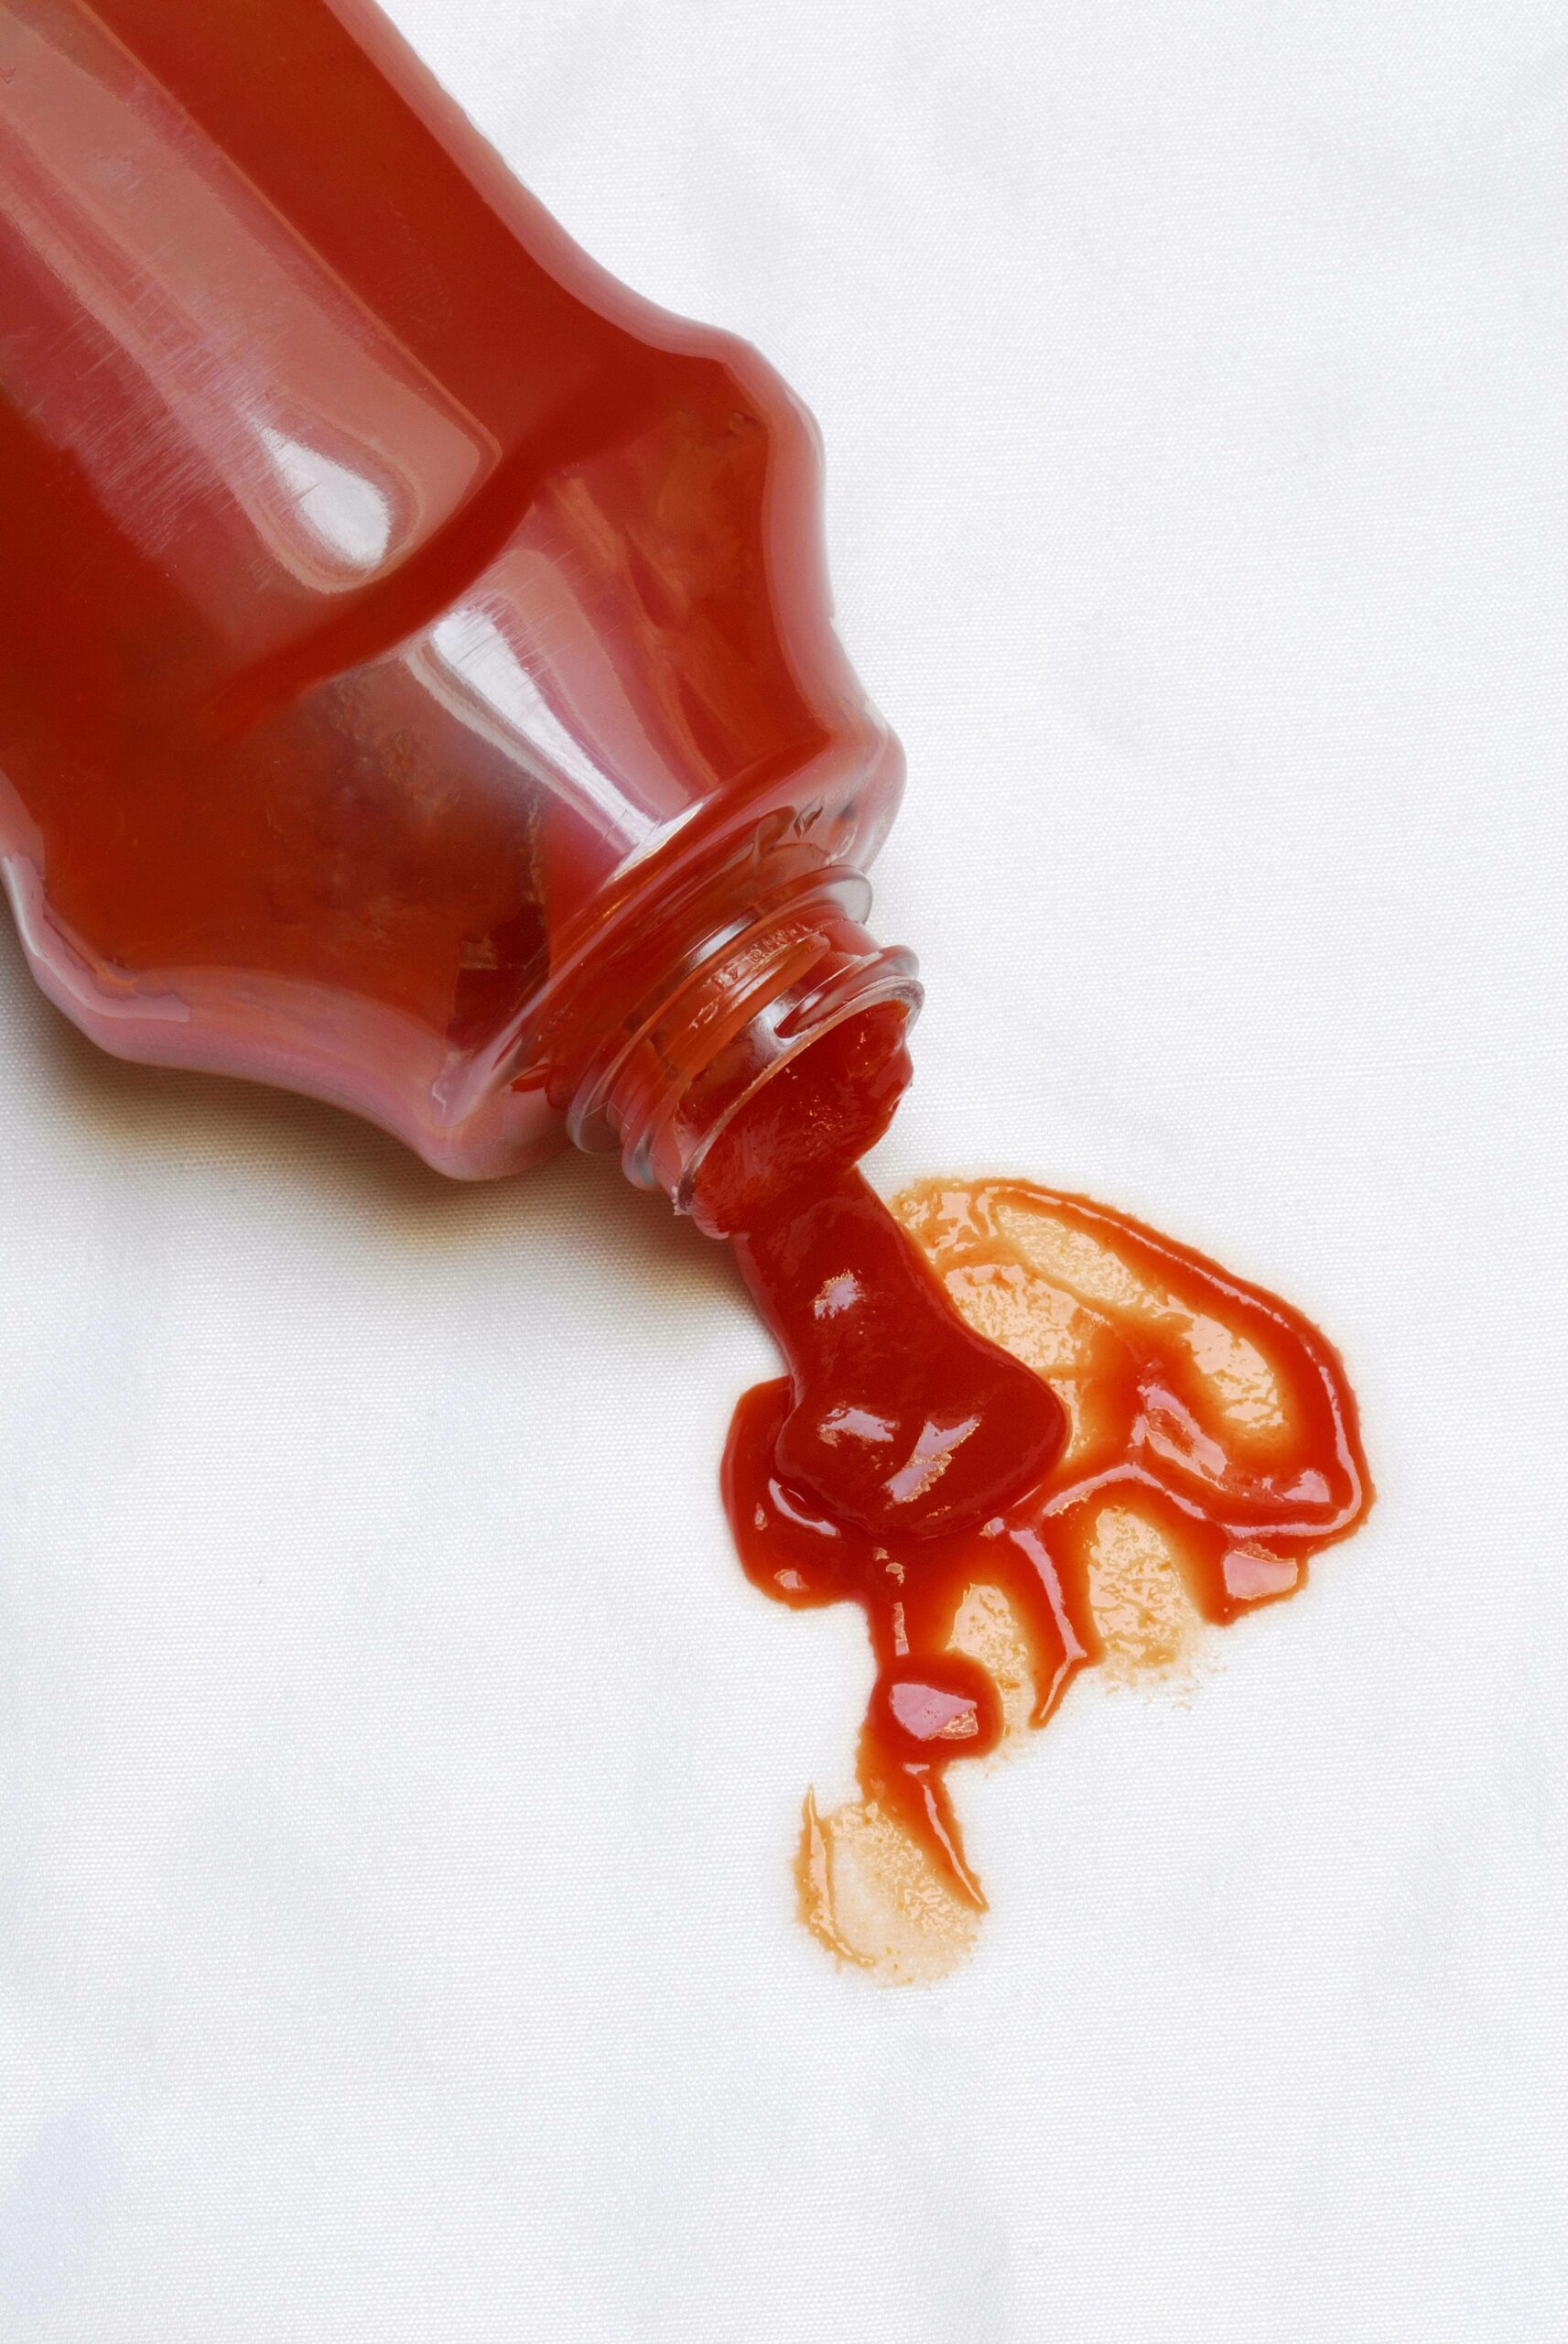 20 Ketchup-Marken hat Ökotest unter die Lupe genommen. Einer schloss besonders schlecht ab.